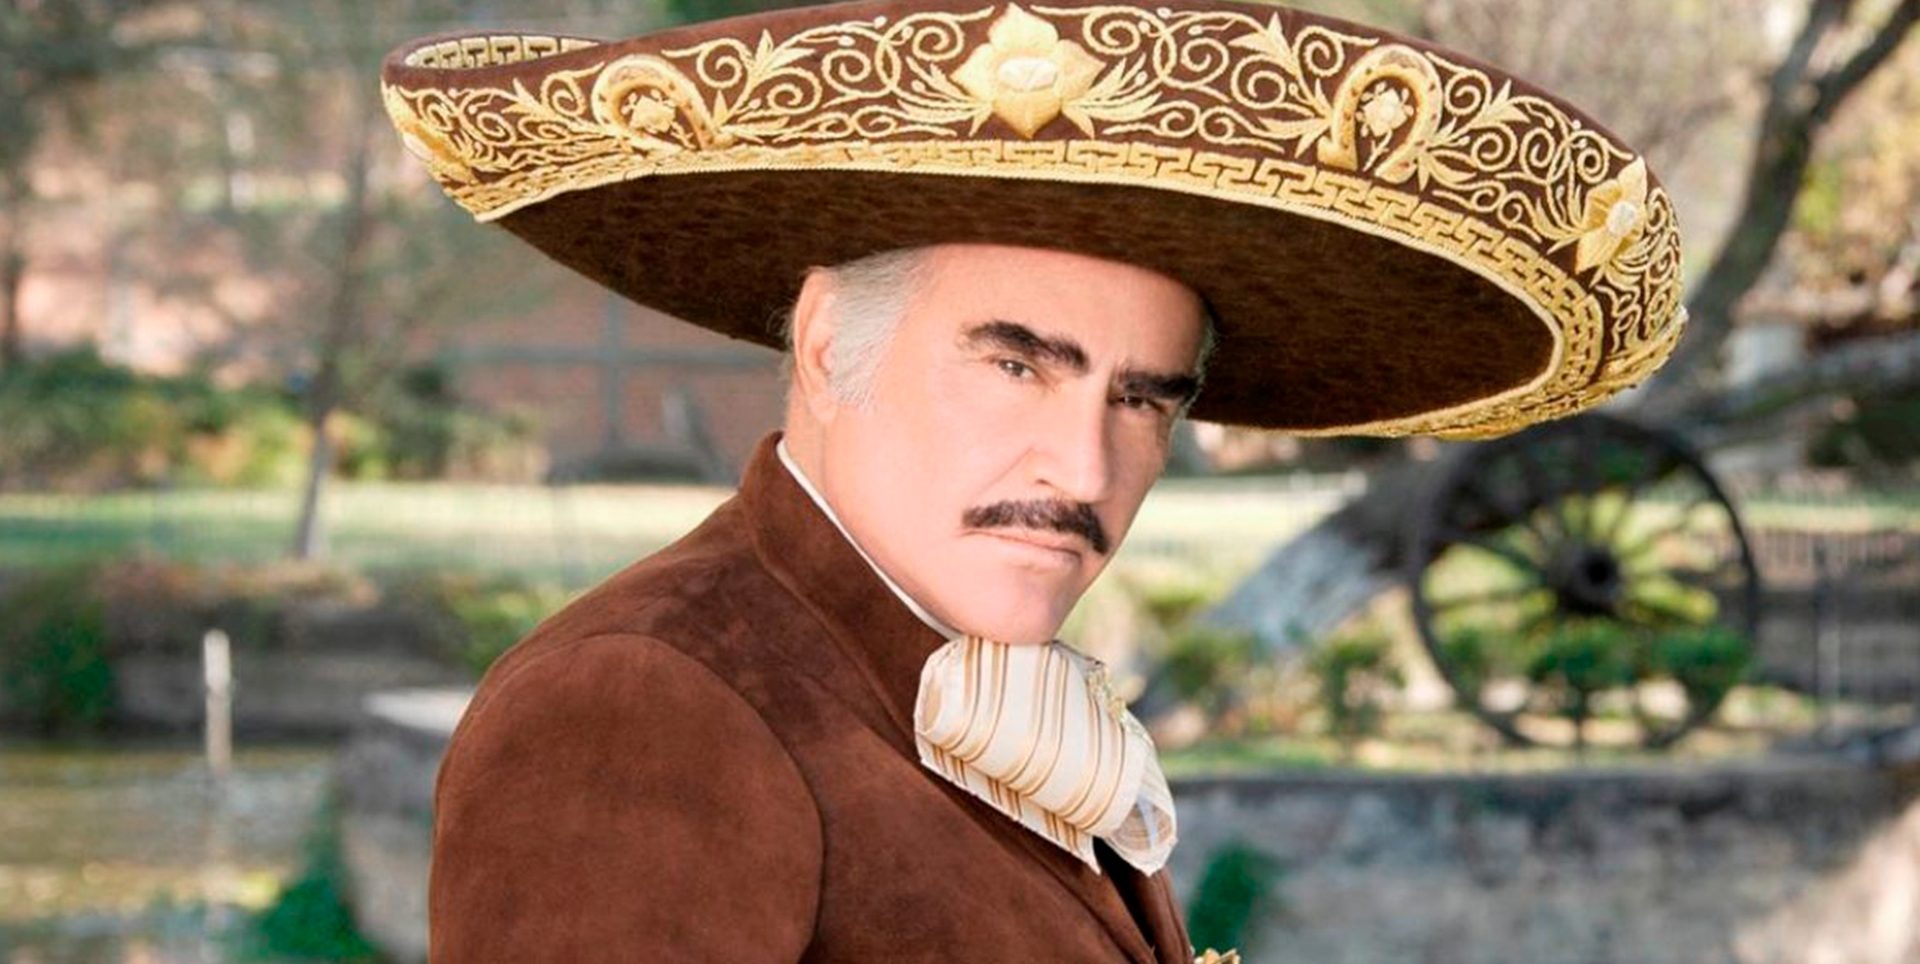 La familia del ya difunto Vicente Fernández, mantiene una disputa con Televisa, por la transmisión de la bioserie "El último Rey".